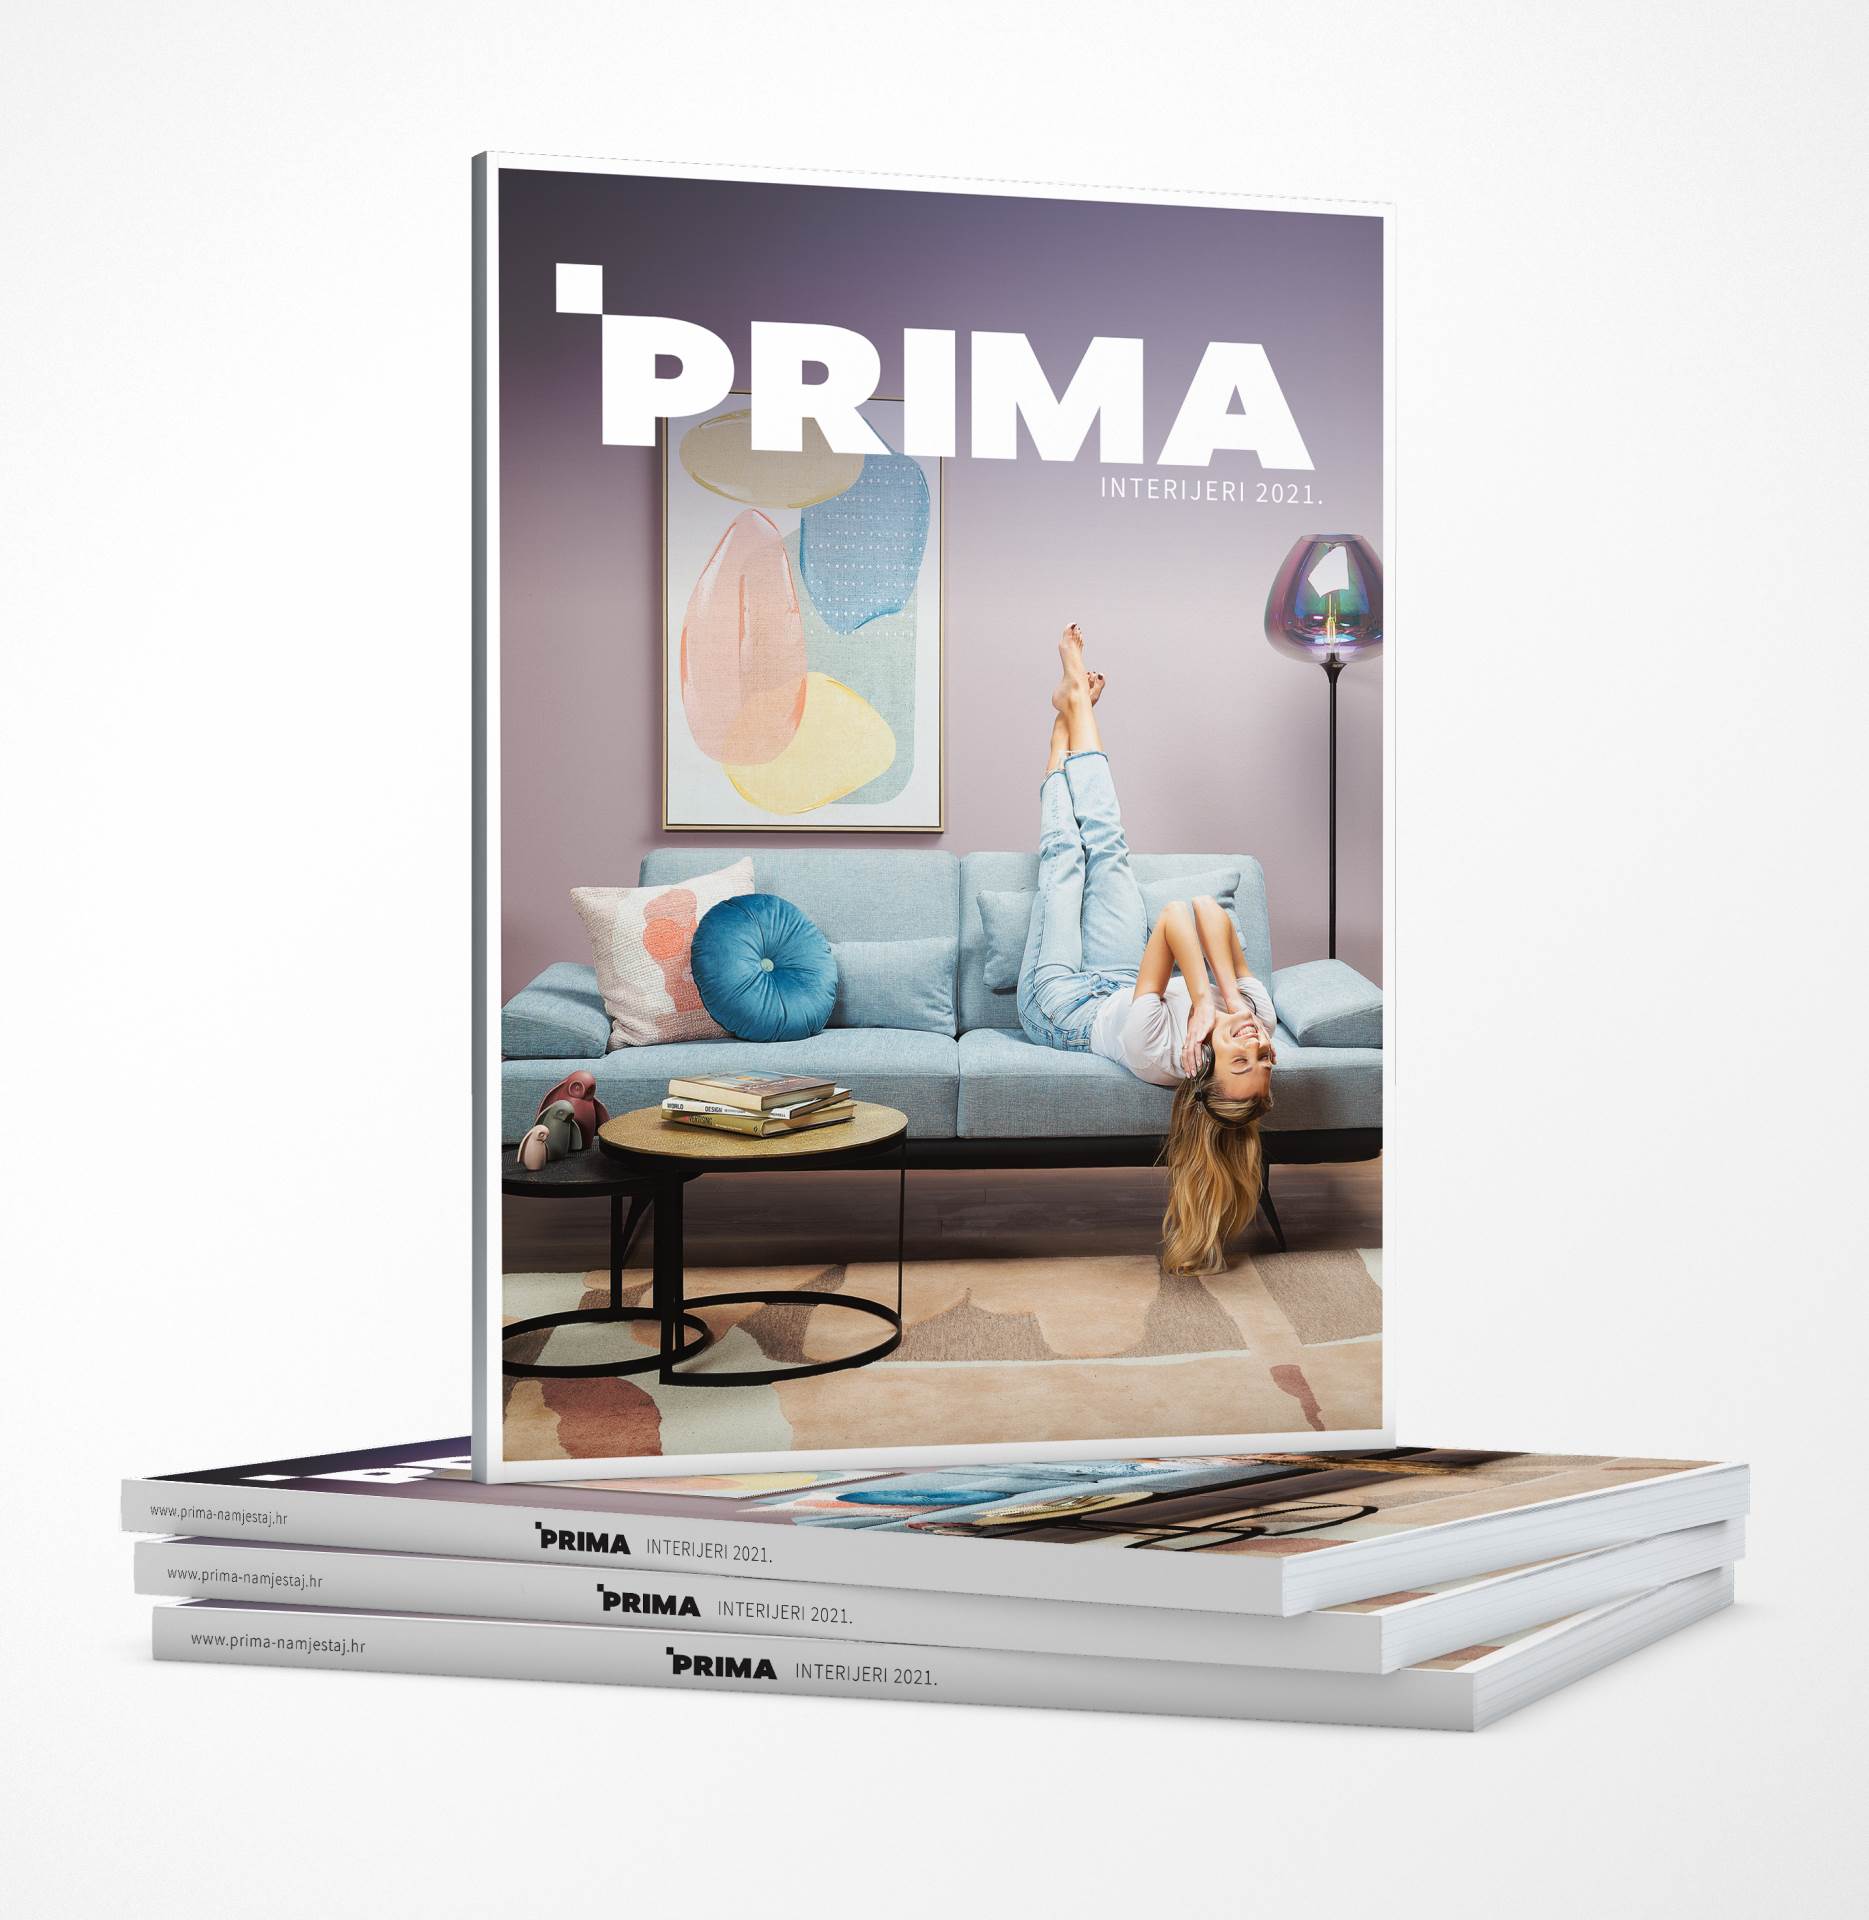 Probudite svoju kreativnost uz novi PRIMA Interijeri katalog!